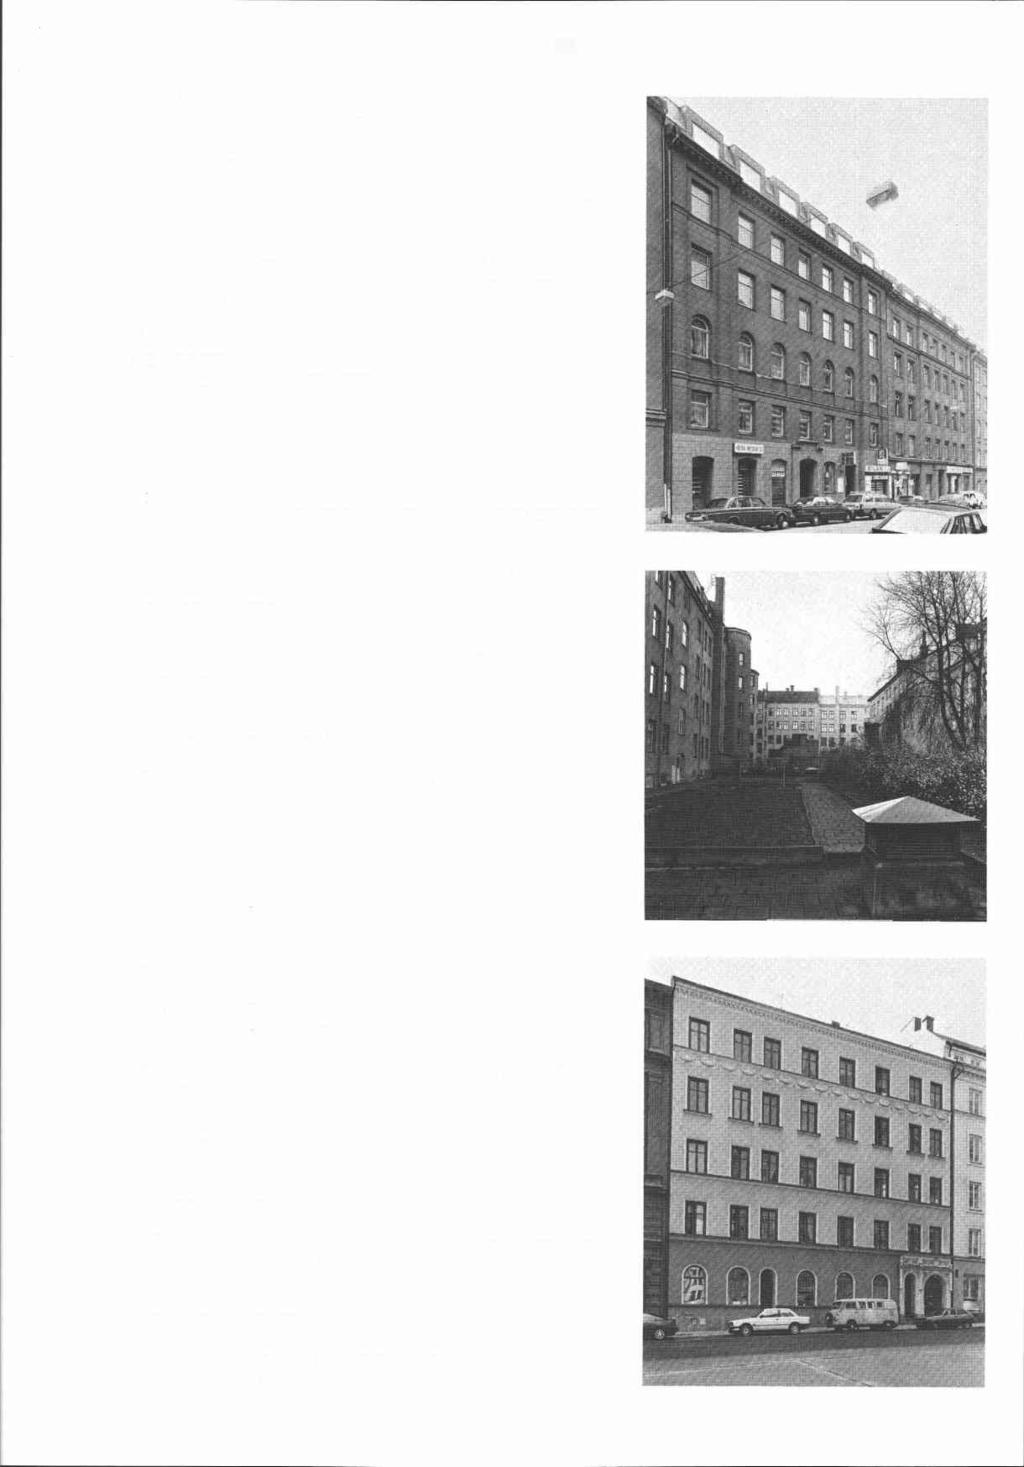 Blåklinten 1 8 (fd 15 och 16) Västmannagatan 64-66 Hus I (fd BlWten 15) Byggnadsår 1885, osign ritn, byggherre och byggmastare A G Törner. 1915 fasadfb-enkling.